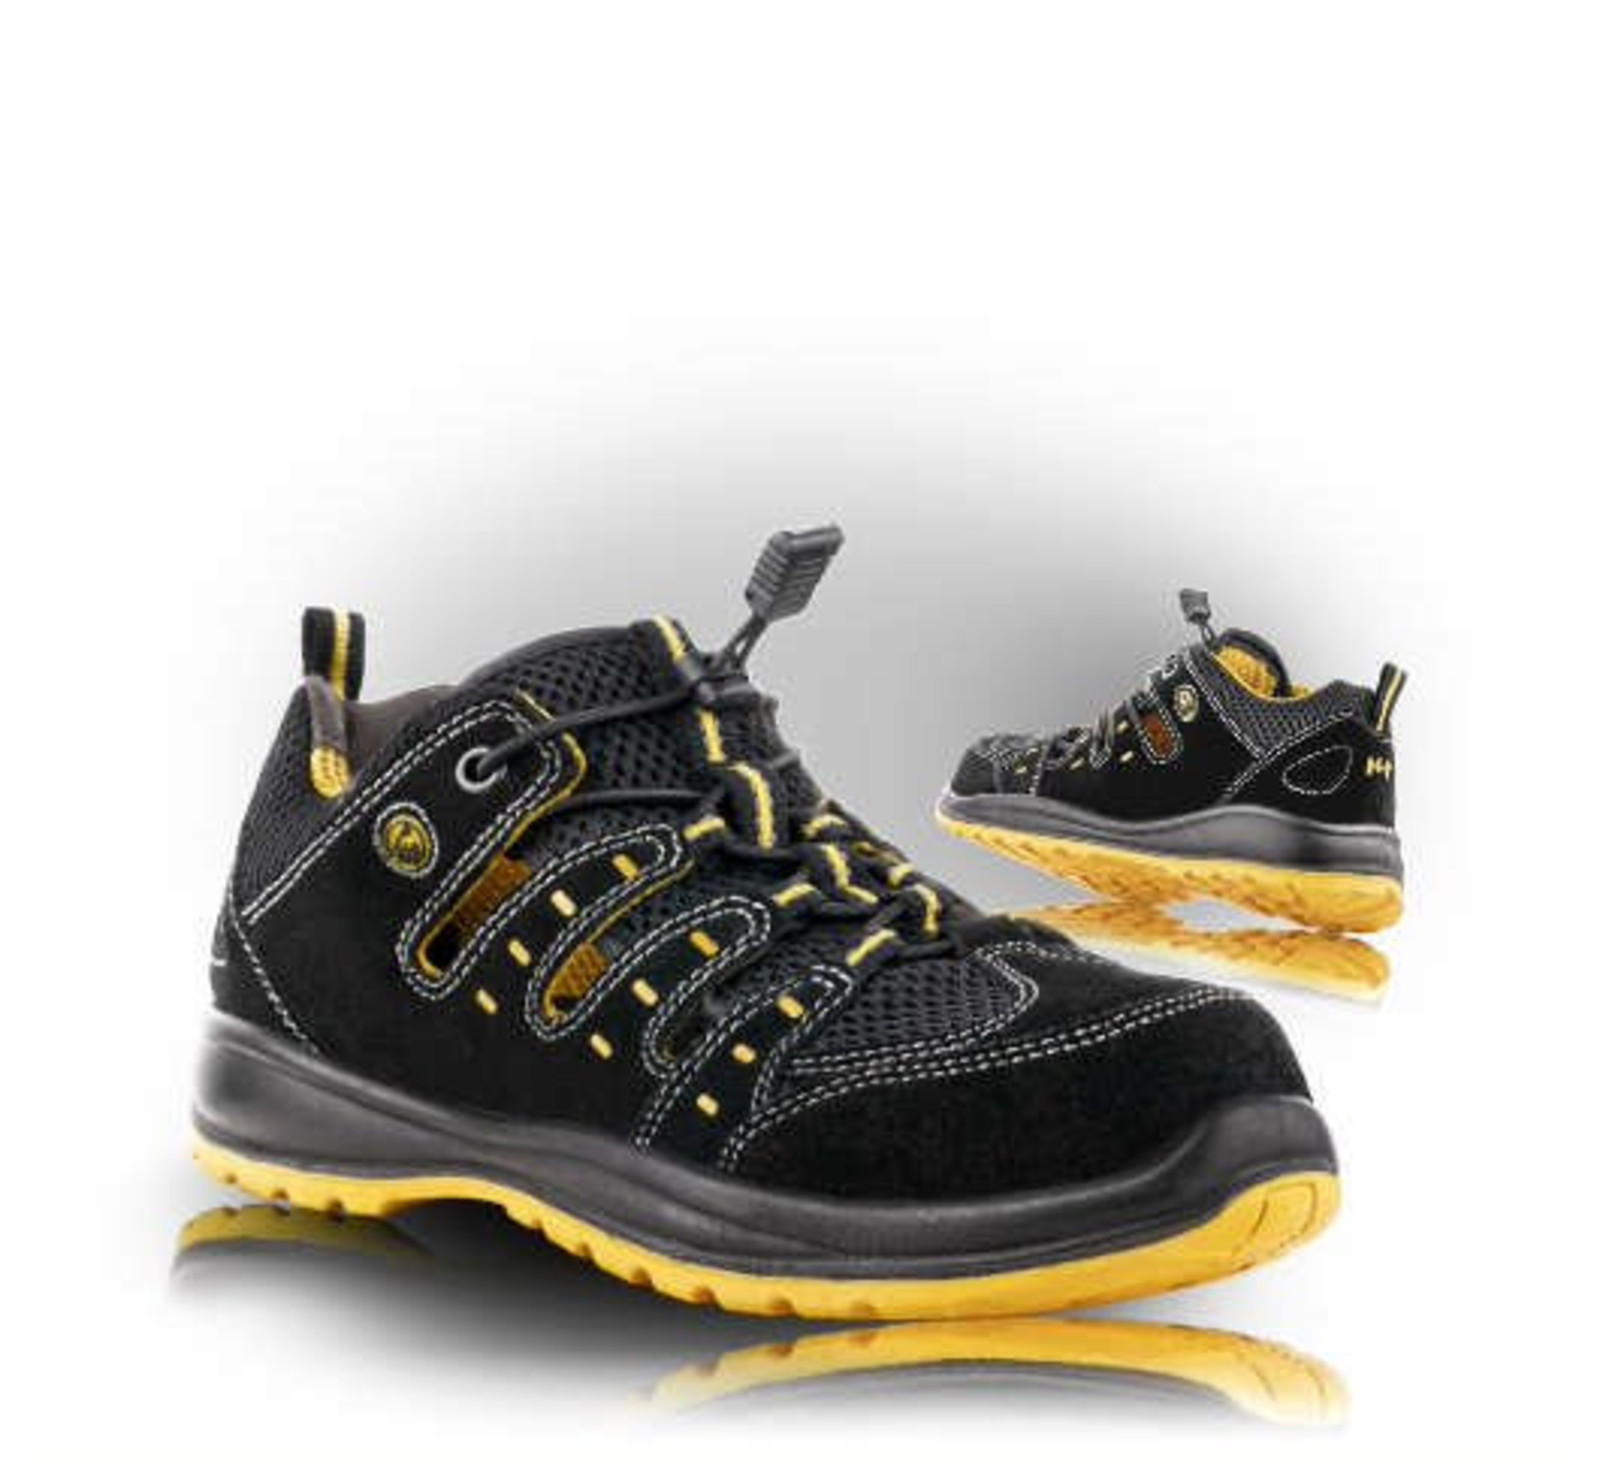 Bezpečnostné sandále Memphis S1 ESD - veľkosť: 44, farba: čierna/žltá